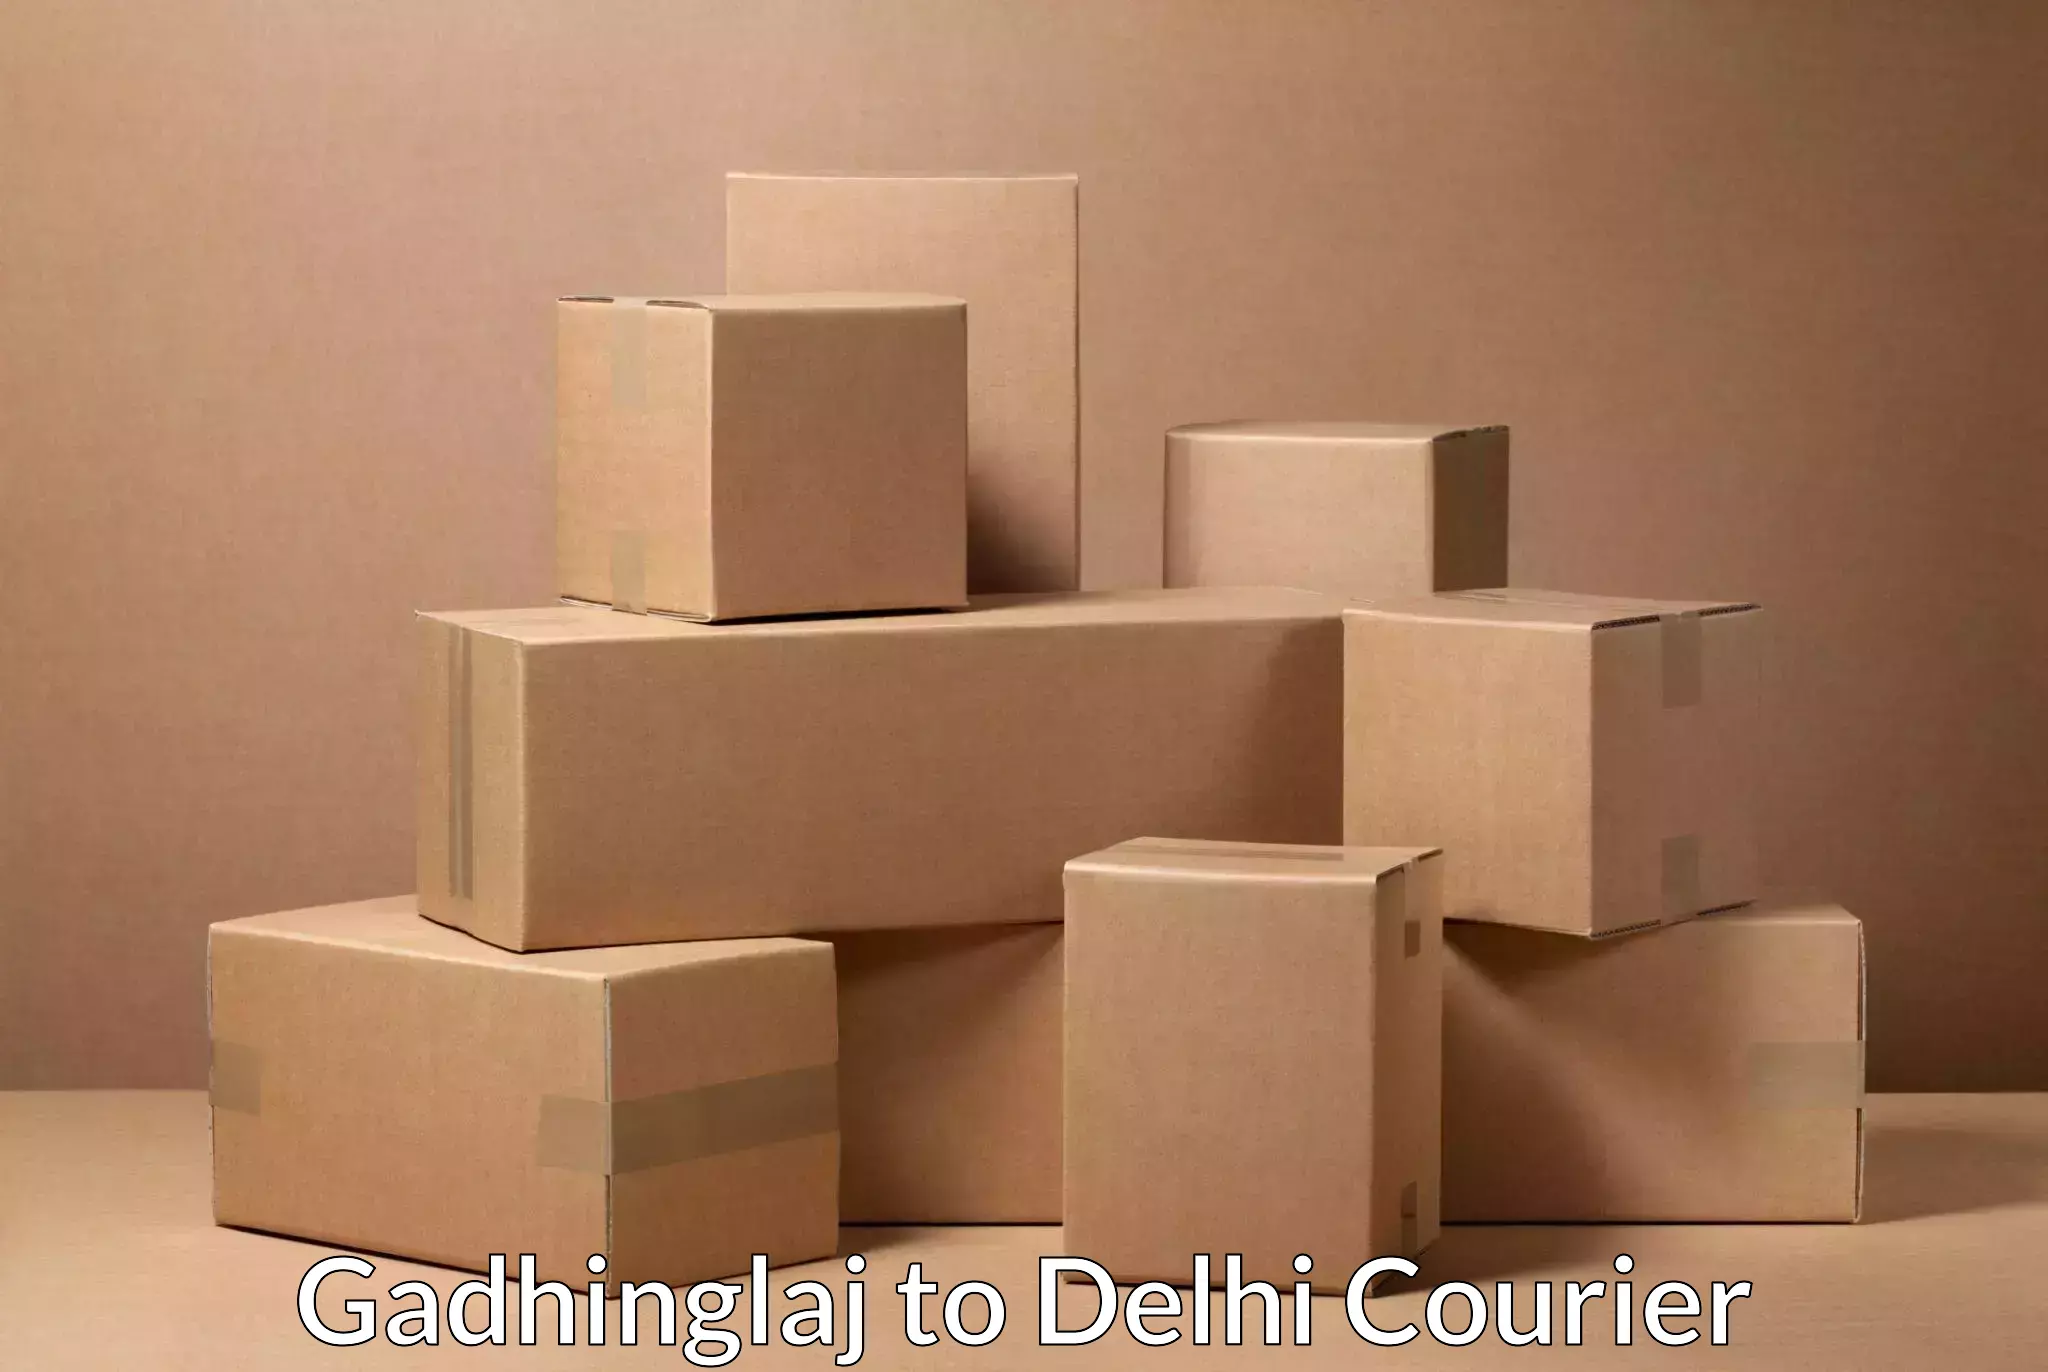 Express package services Gadhinglaj to Delhi